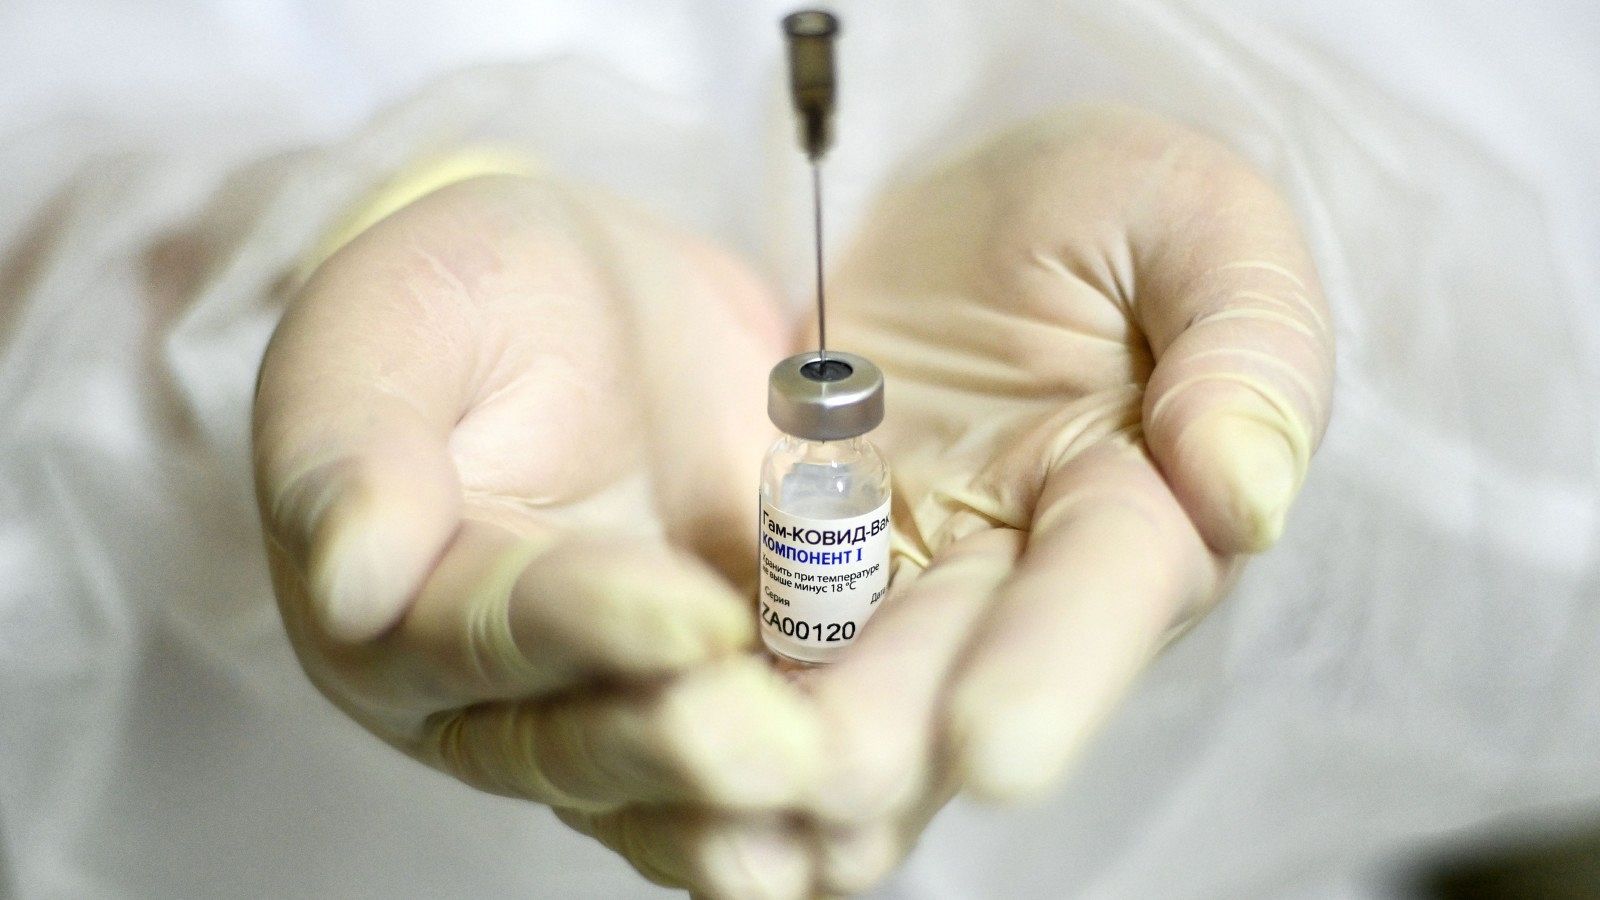 Un profesional sanitario muestra un vial de la vacuna rusa Sputnik V, en una imagen de archivo.